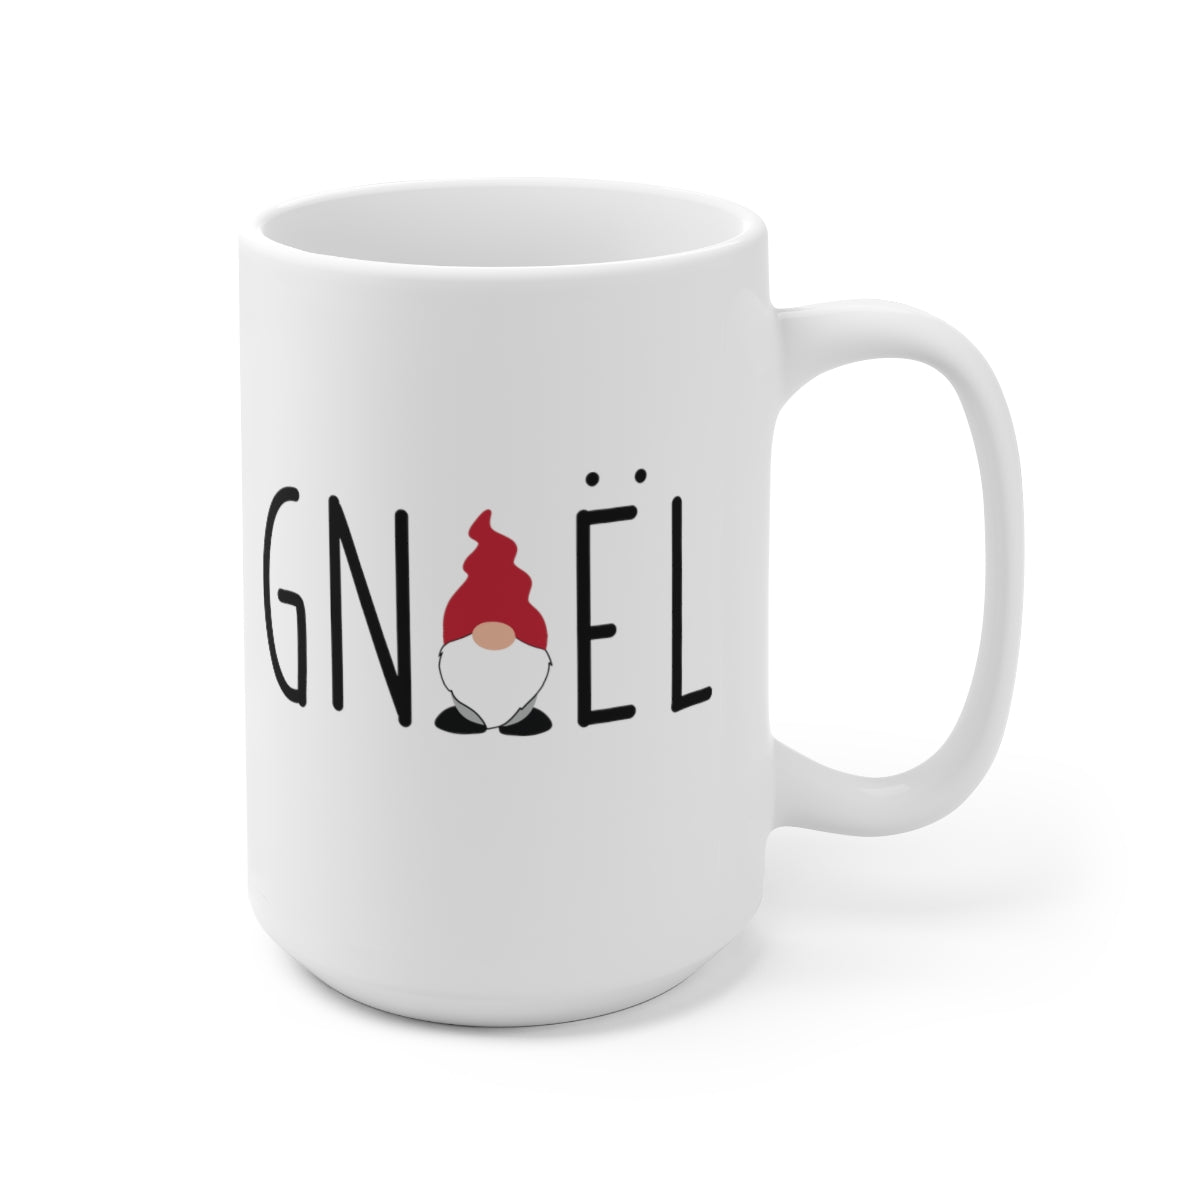 Gnoel Mug Scandinavian Design Studio